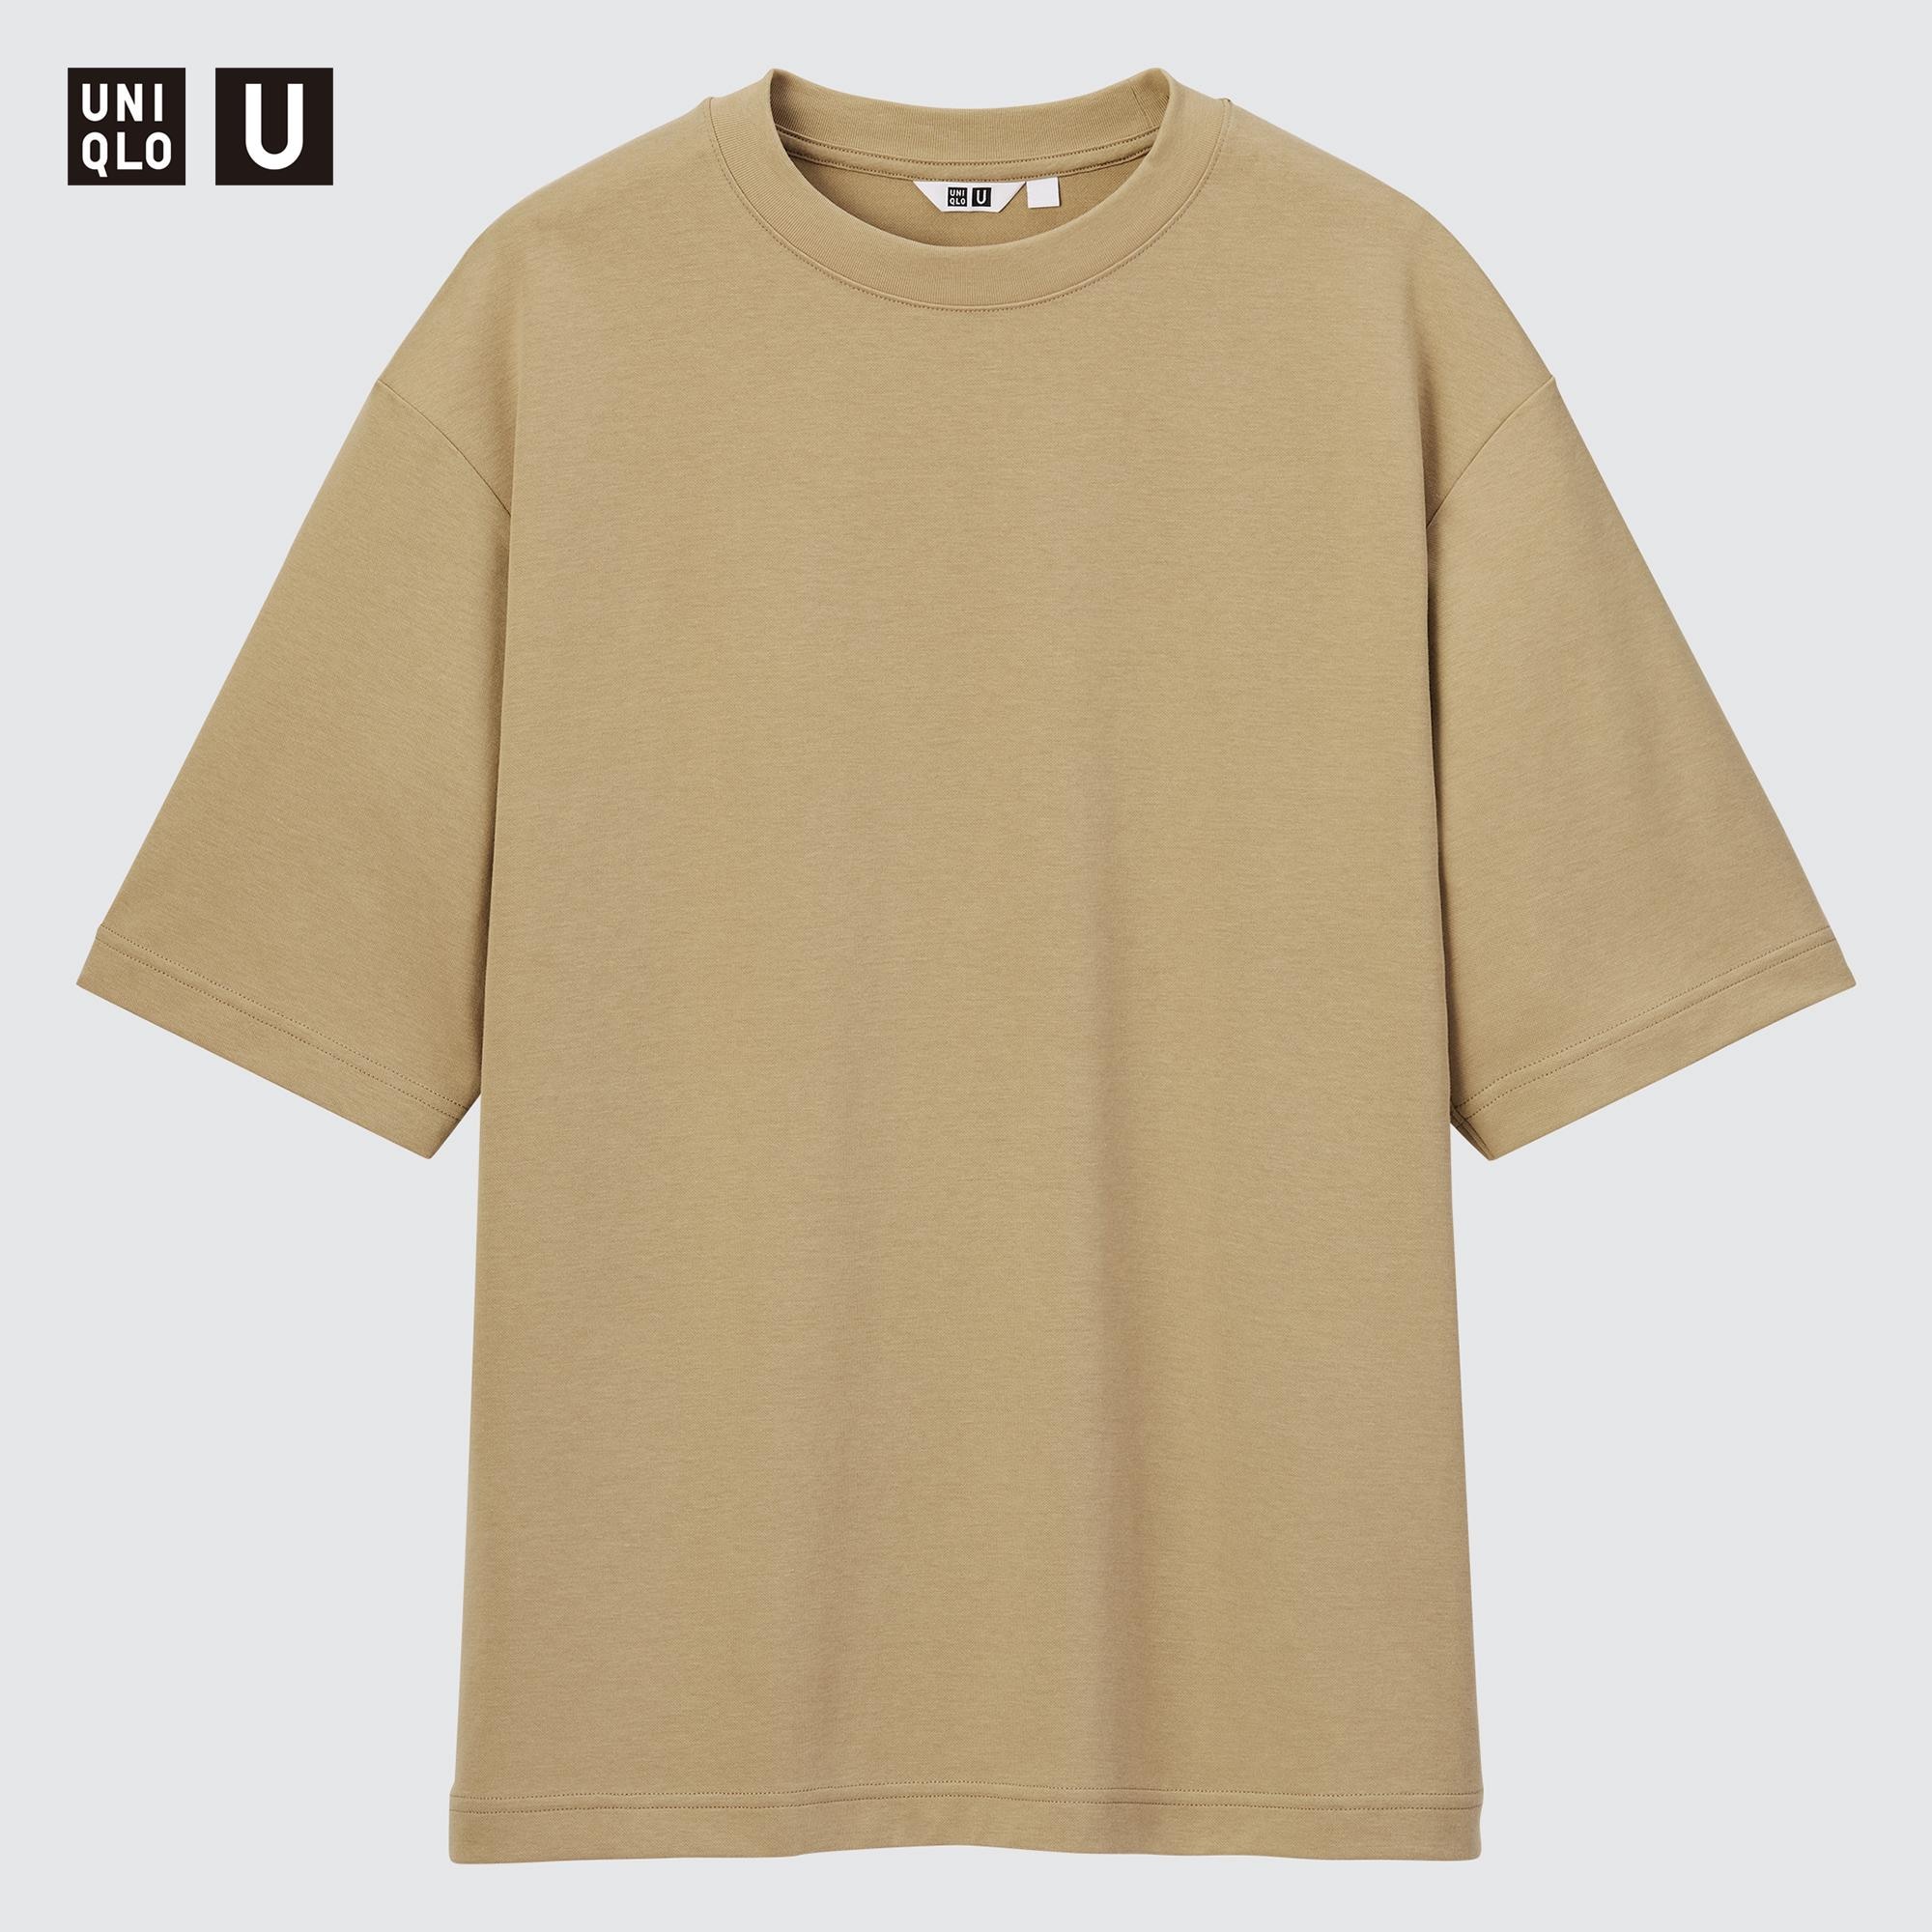 New Uniqlo tshirt brown Mens Fashion Tops  Sets Tshirts  Polo Shirts  on Carousell